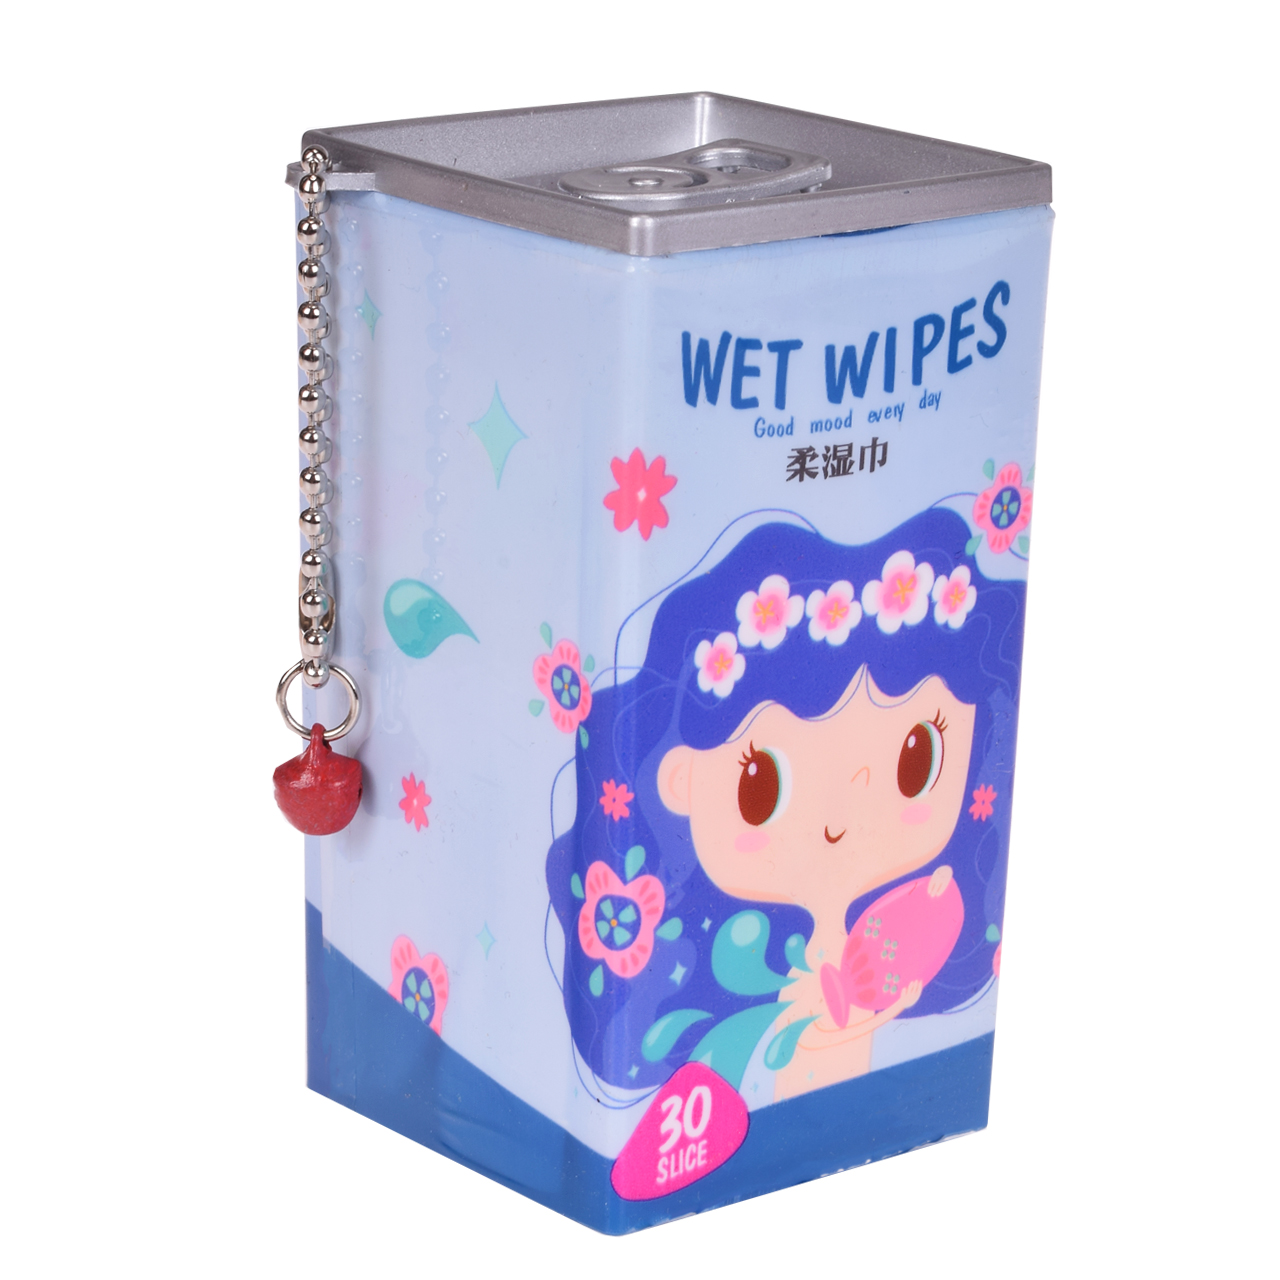 دستمال مرطوب مدل wet wipes 1 بسته 30 عددی